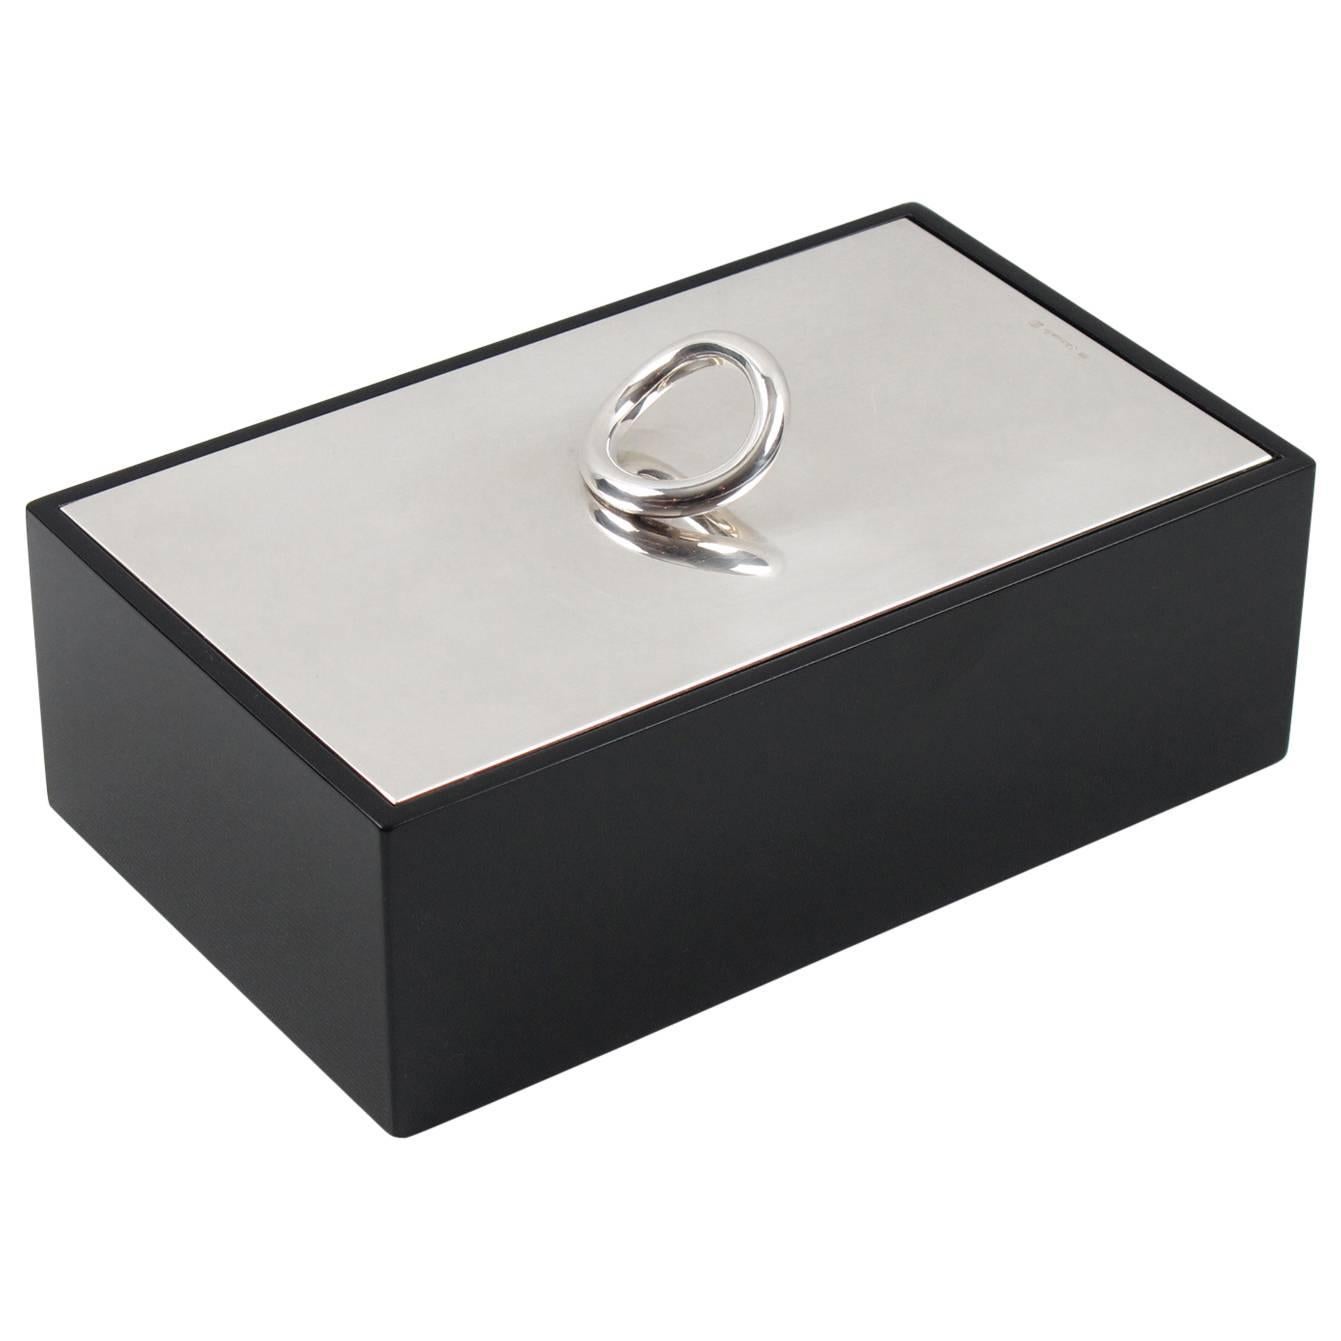 Silver Plate and Lacquer Vertigo Box Designed by Andrée Putman for Christofle